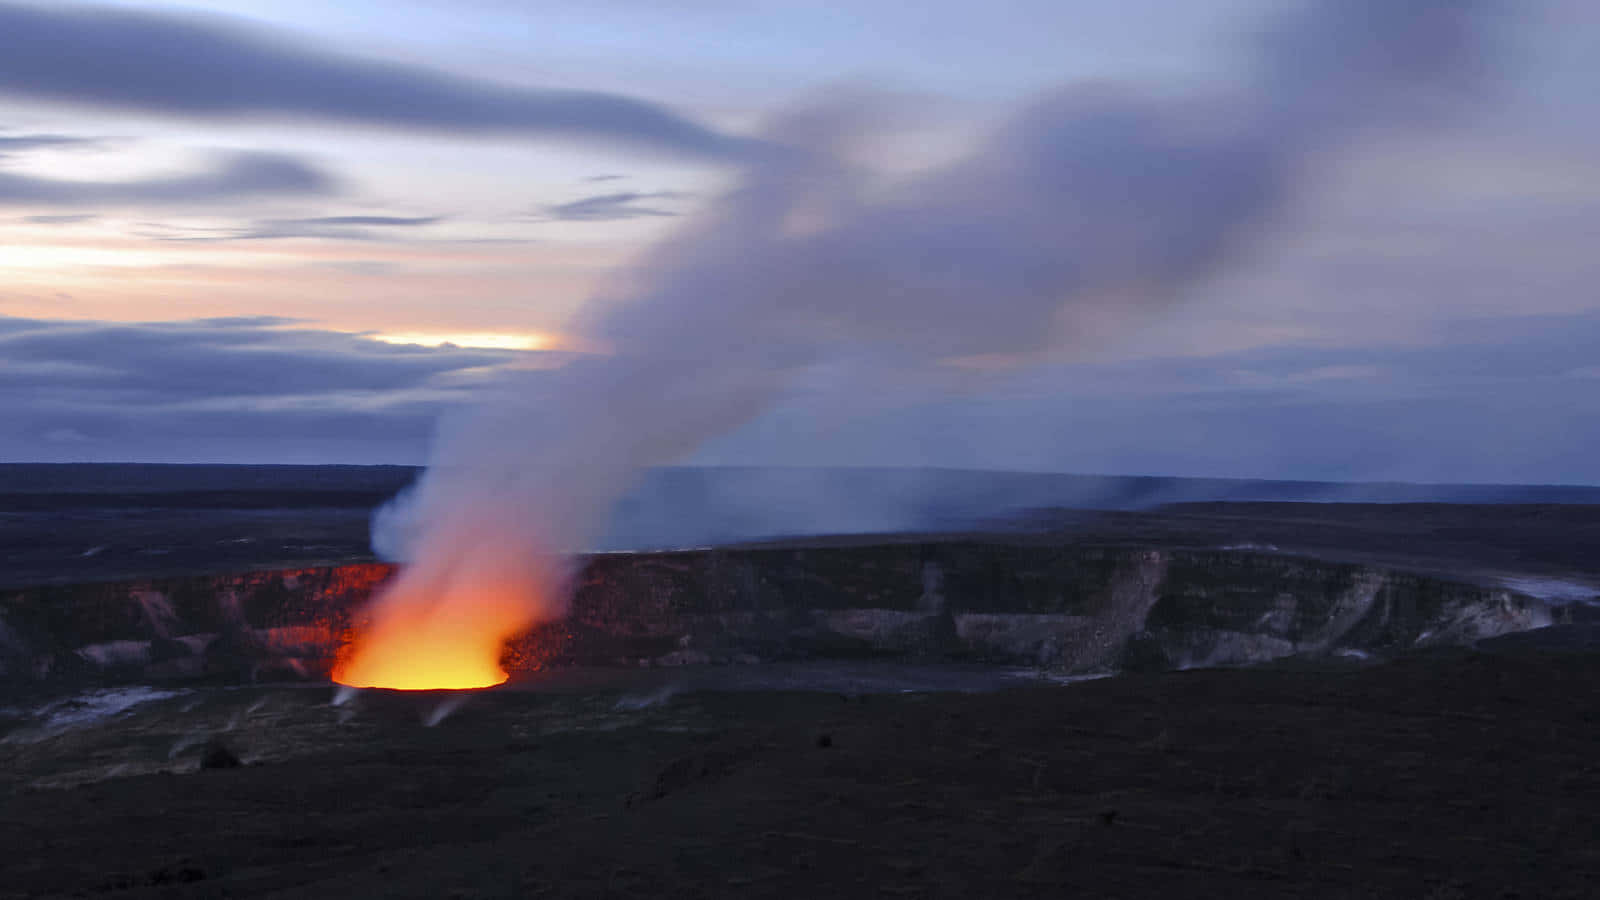 Hawaiivolcanoes National Park Night View Skulle Översättas Till Svenska Som 